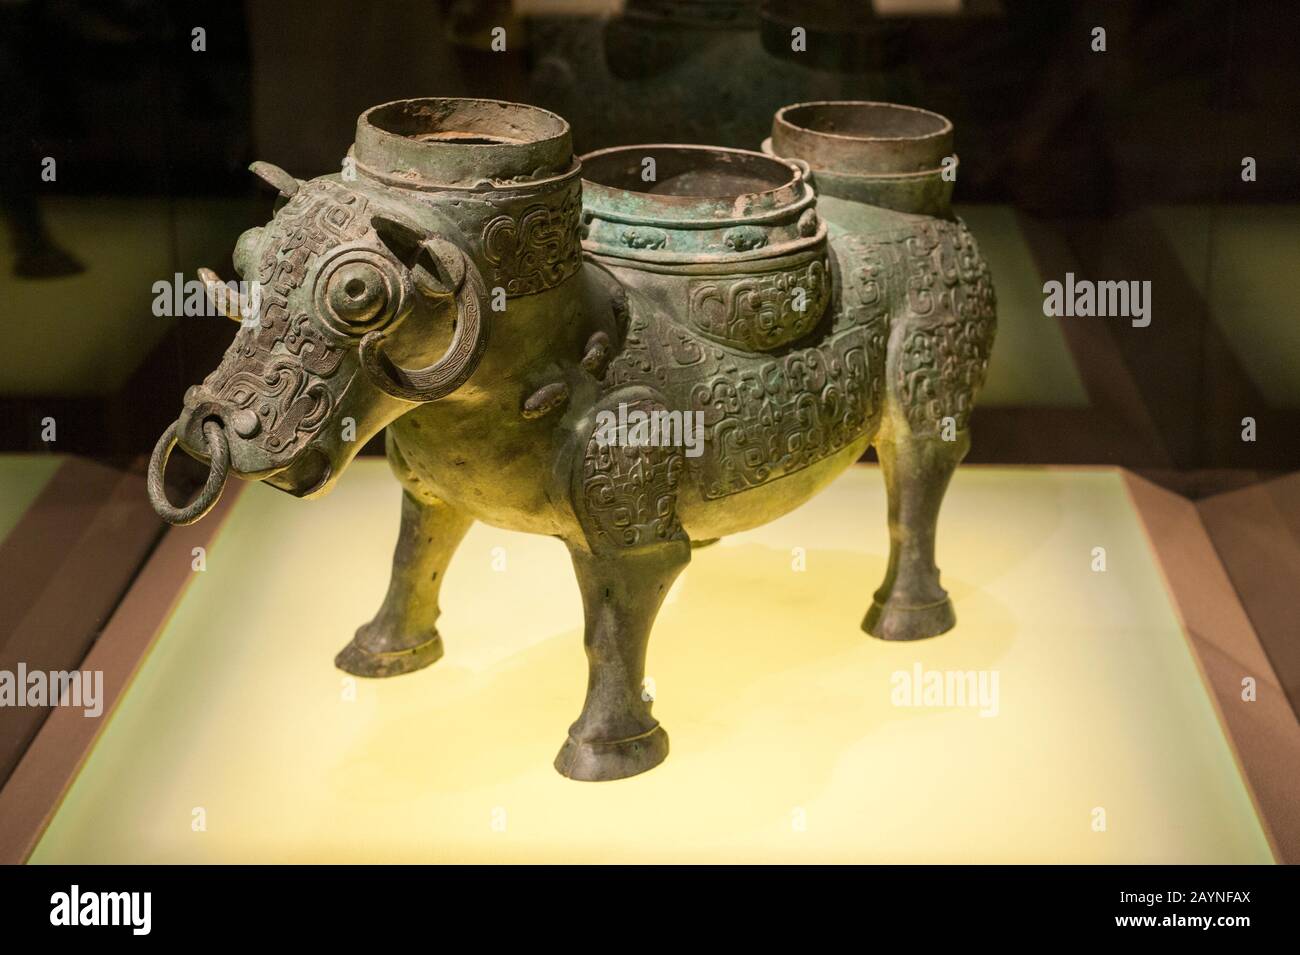 Artefakt in der Bronze-Ausstellung im Shanghaier Museum, einem Museum für alte chinesische Kunst, das sich auf dem Peoples Square im Huangpu Distrikt Shan befindet Stockfoto